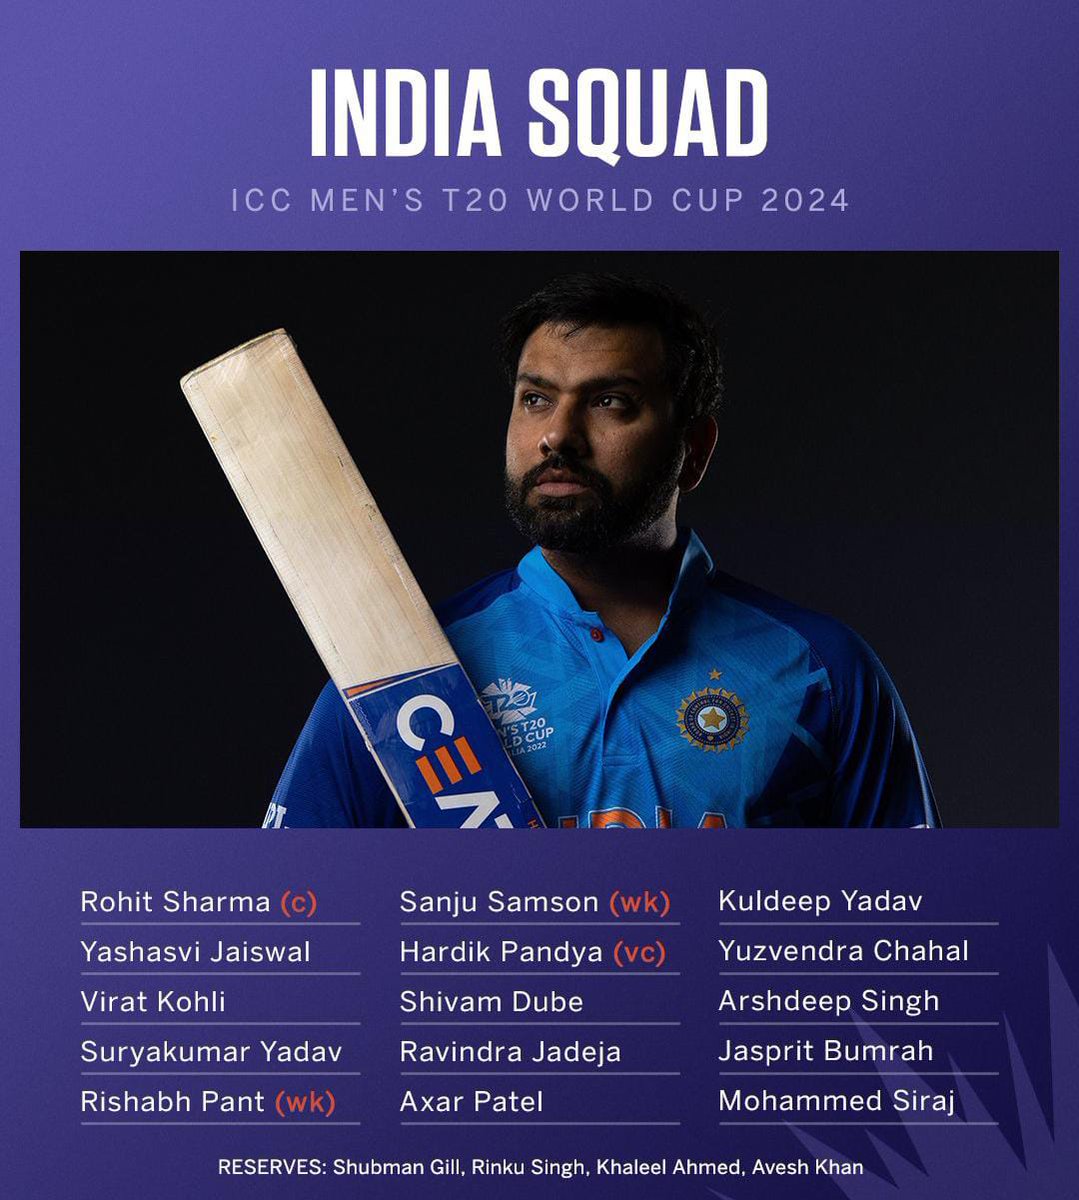 ٹی ٹوئنٹی ورلڈ کپ کے لیے بھارتی اسکواڈ کا اعلان کر دیا گیا۔
#T20WorldCup2024 #IndiaCricket